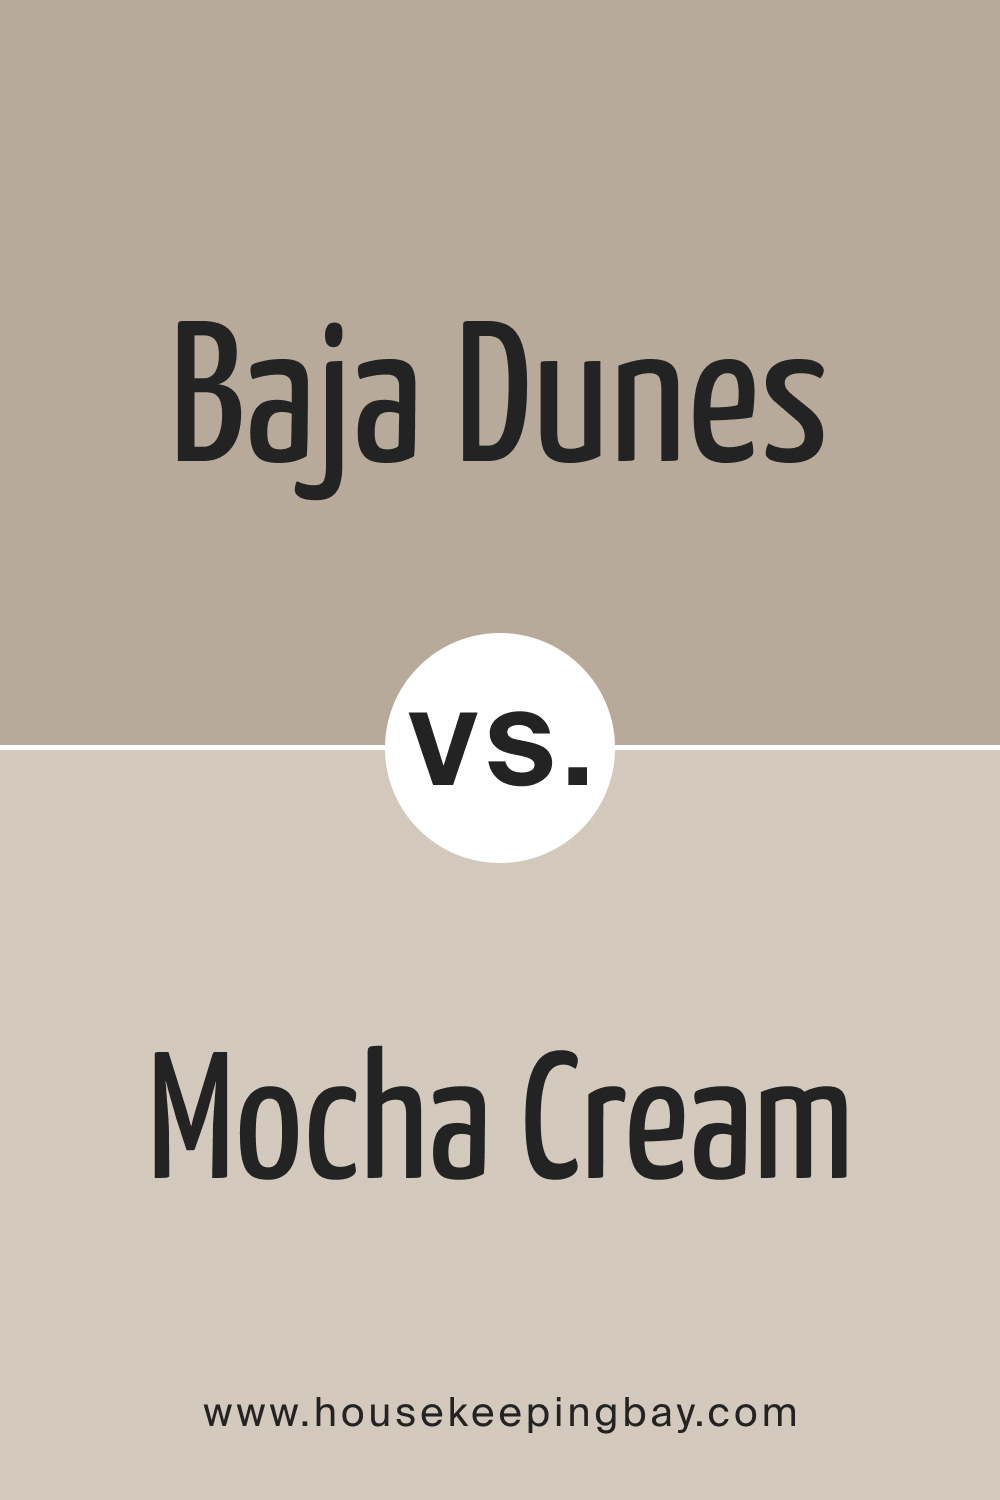 BM Baja Dunes 997 vs. BM 995 Mocha Cream